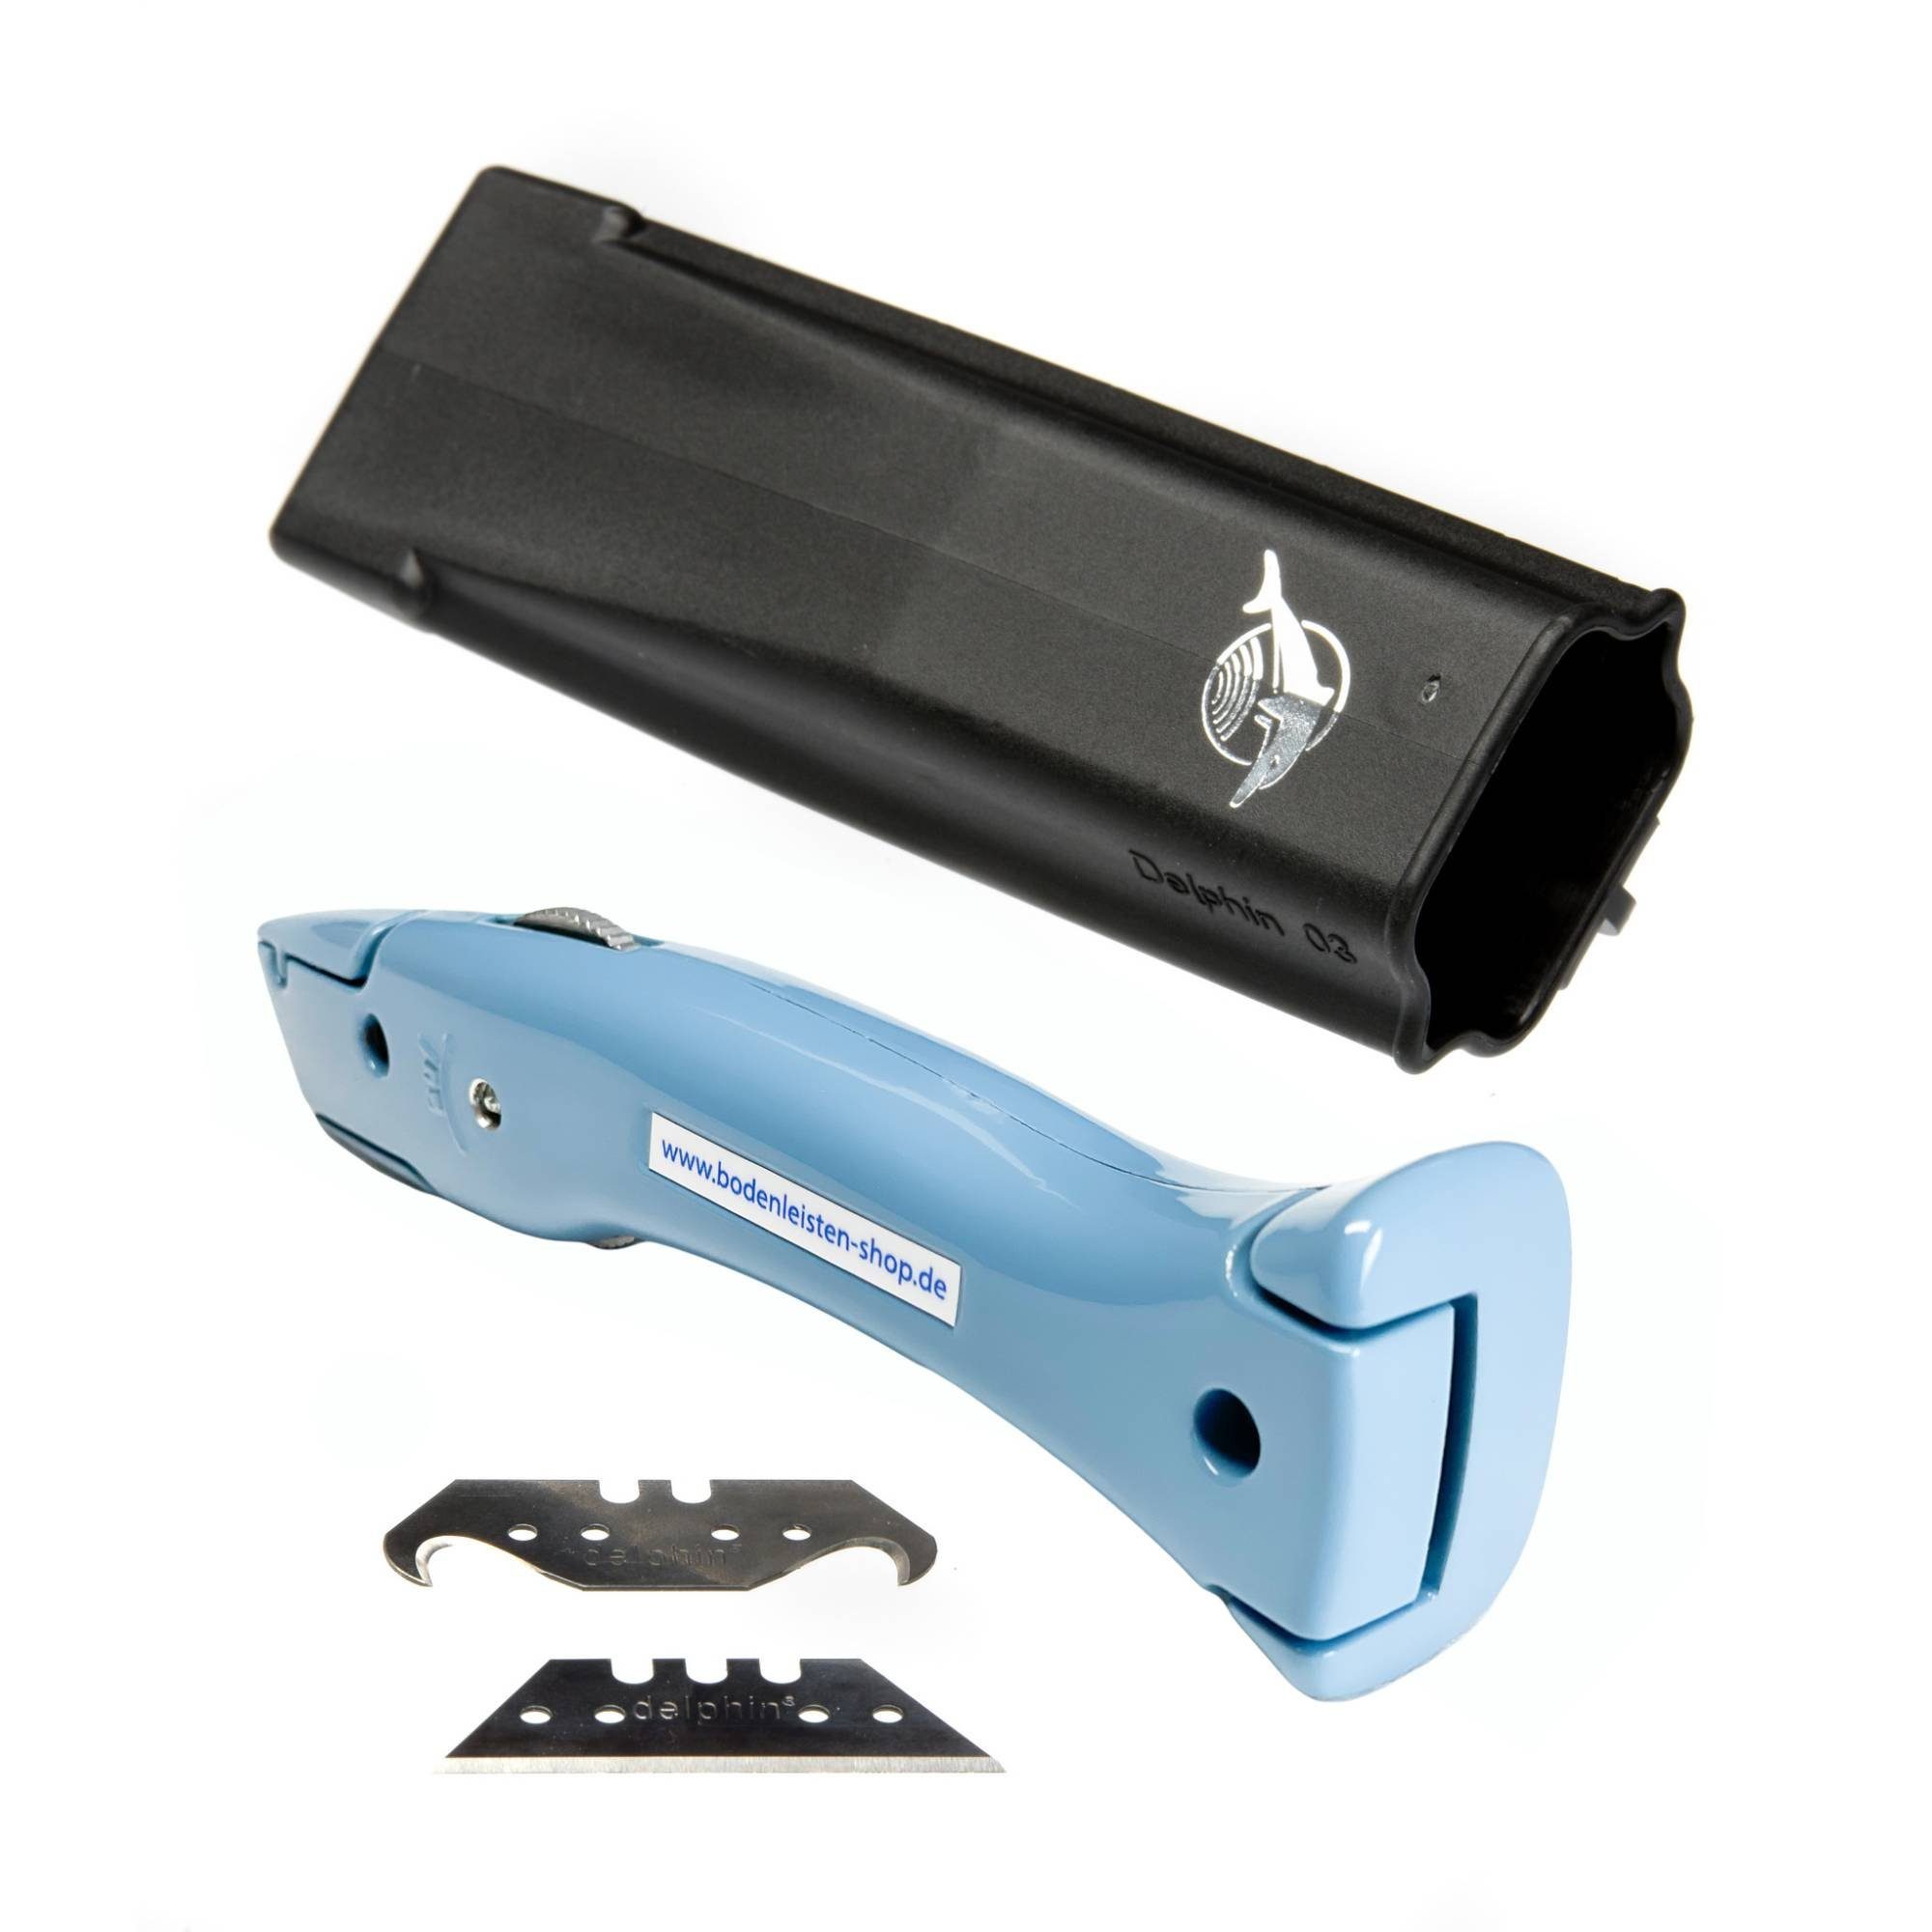 Delphin Cutter Delphin®-03 Style-Edition Universalmesser Cuttermesser Pastellblau